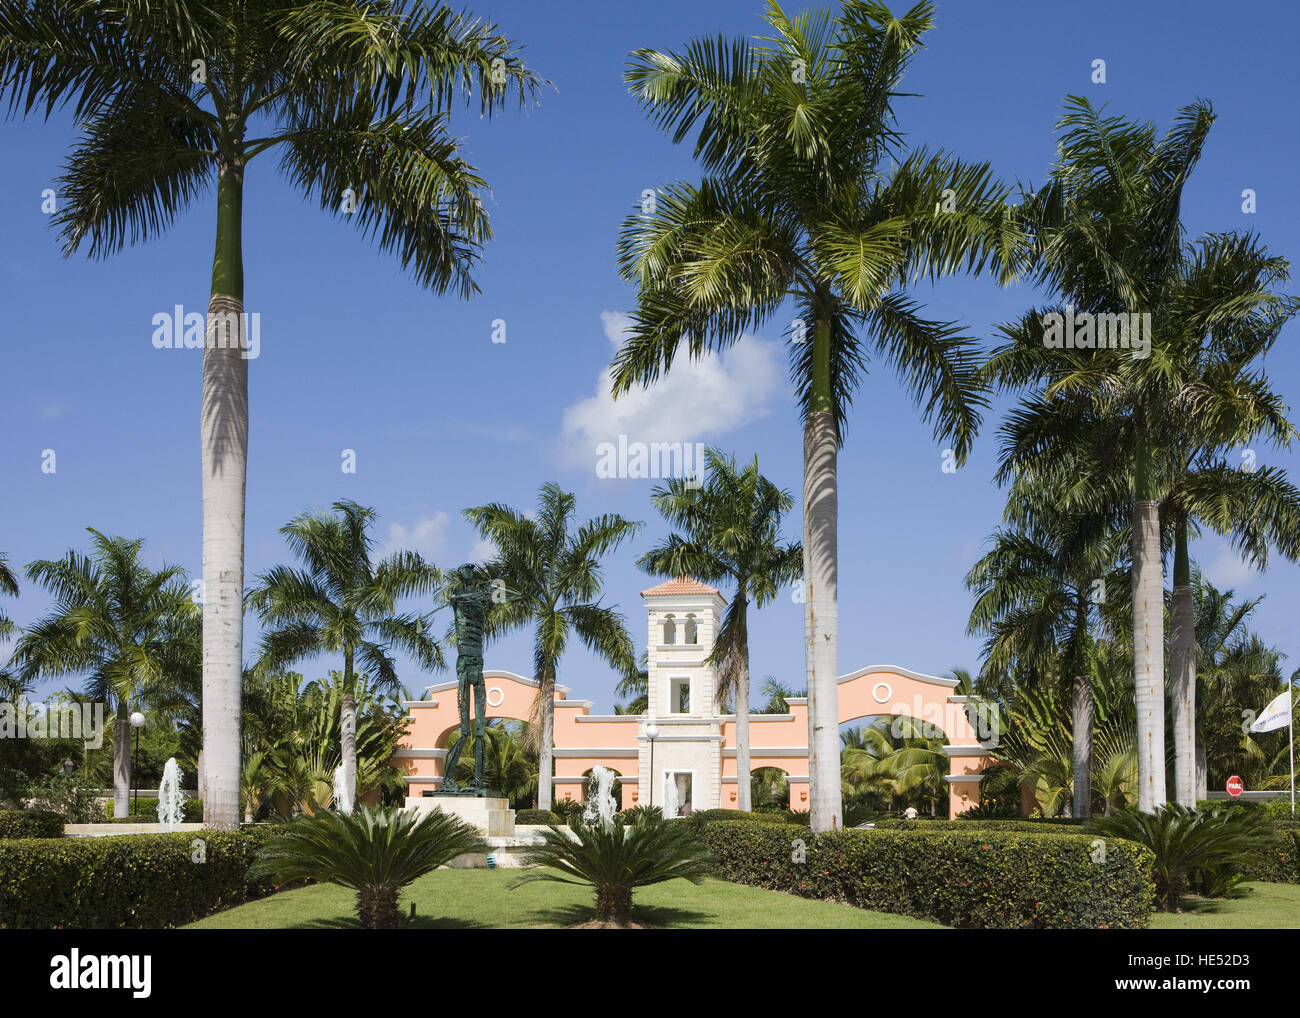 Gran Bahia Principe Resort, Punta Cana, Dominican Republic, Caribbean Stock Photo